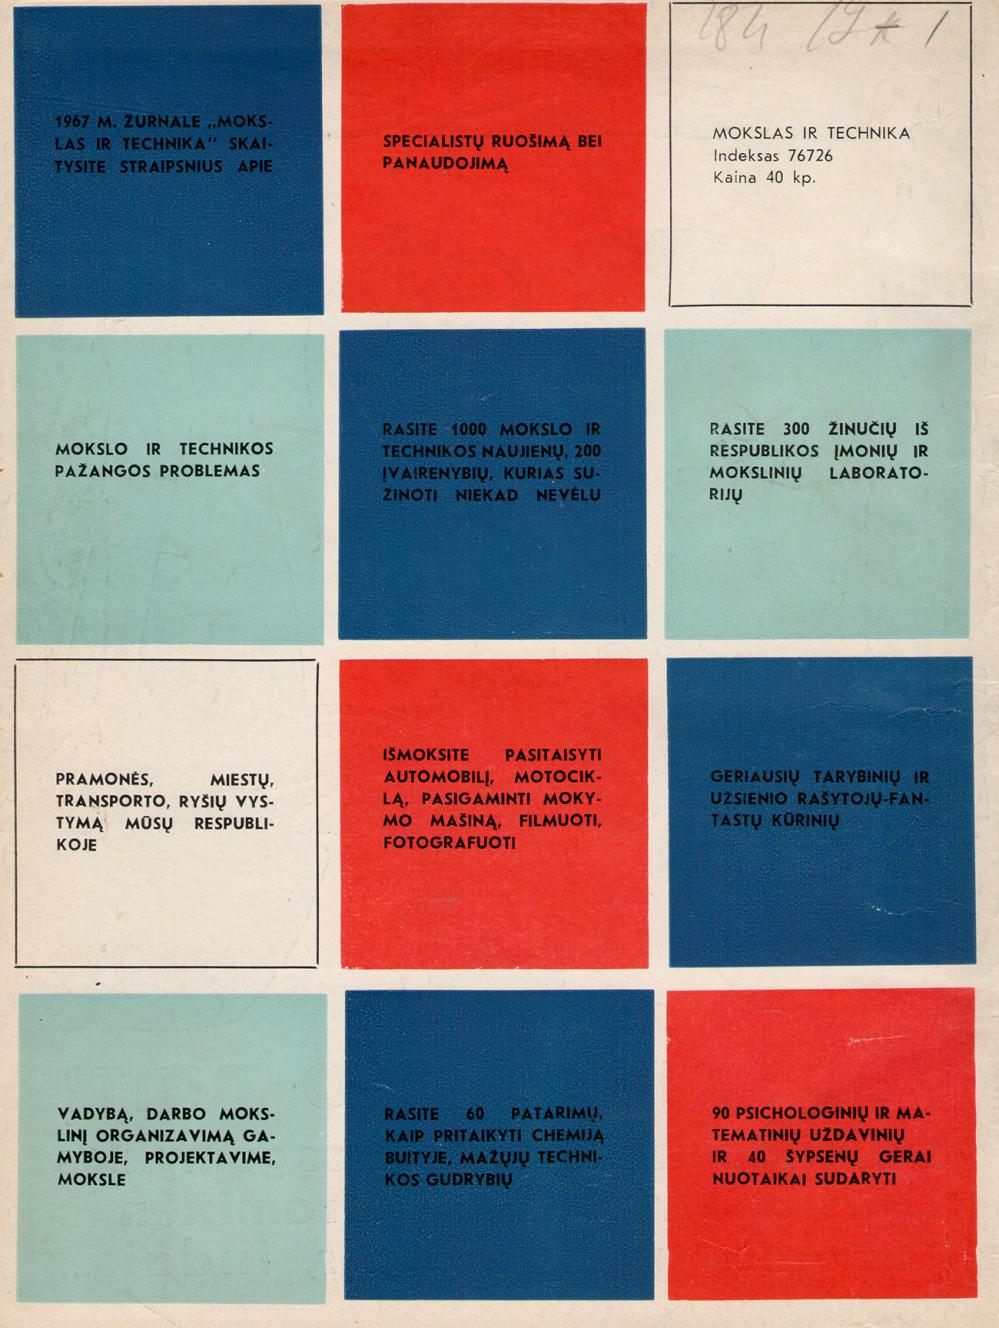 1967 m. žurnale „Mokslas ir technika“ skaitykite